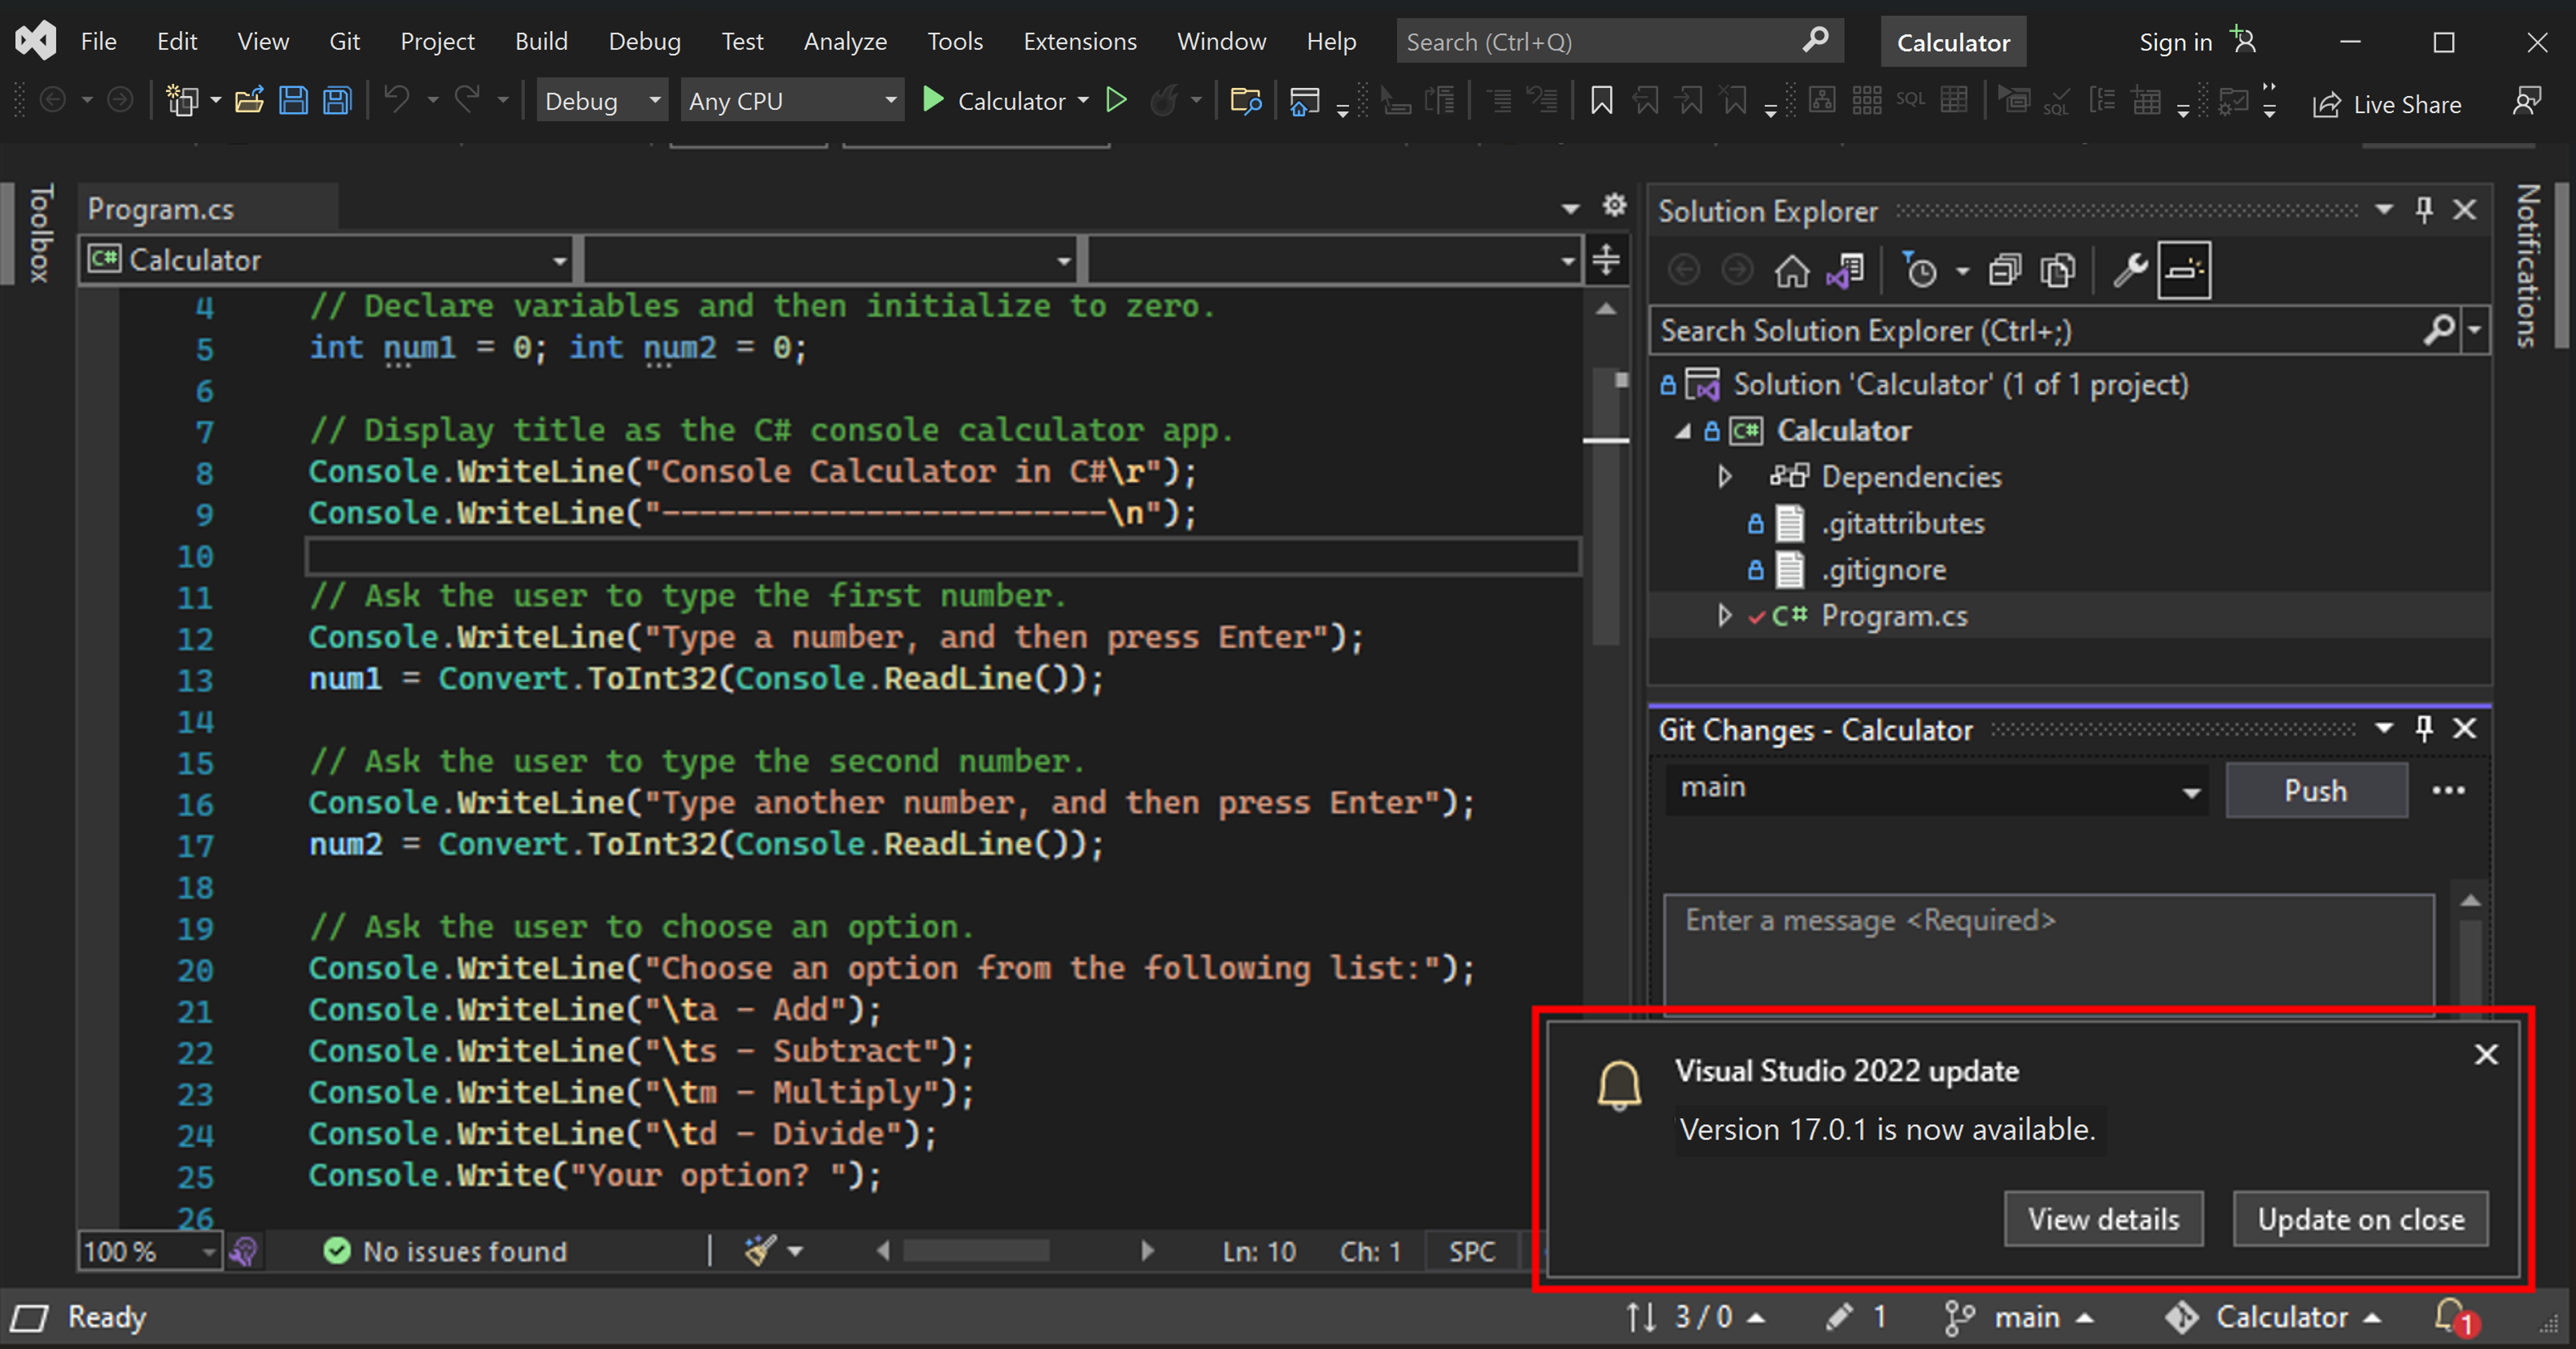 Capture d’écran montrant un message de mise à jour pour Visual Studio 2022 dans le coin inférieur droit de l’IDE Visual Studio.